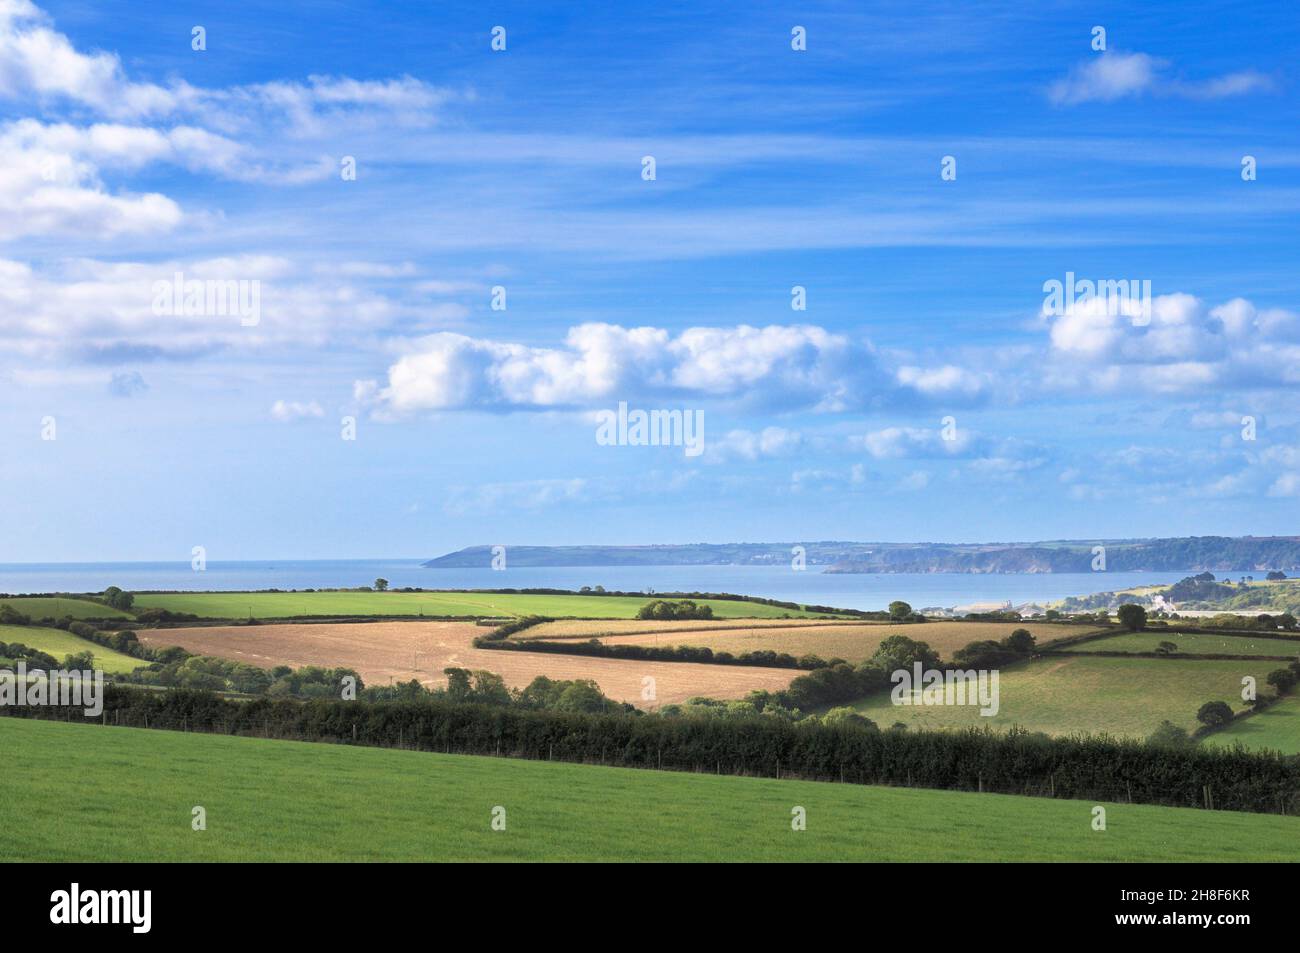 Ein einfacher Blick auf die Landschaft mit grünen Feldern, Bäumen, Hecken und Saatbeeten auf Ackerland an der Küste Cornwalls, England, Großbritannien. Stockfoto